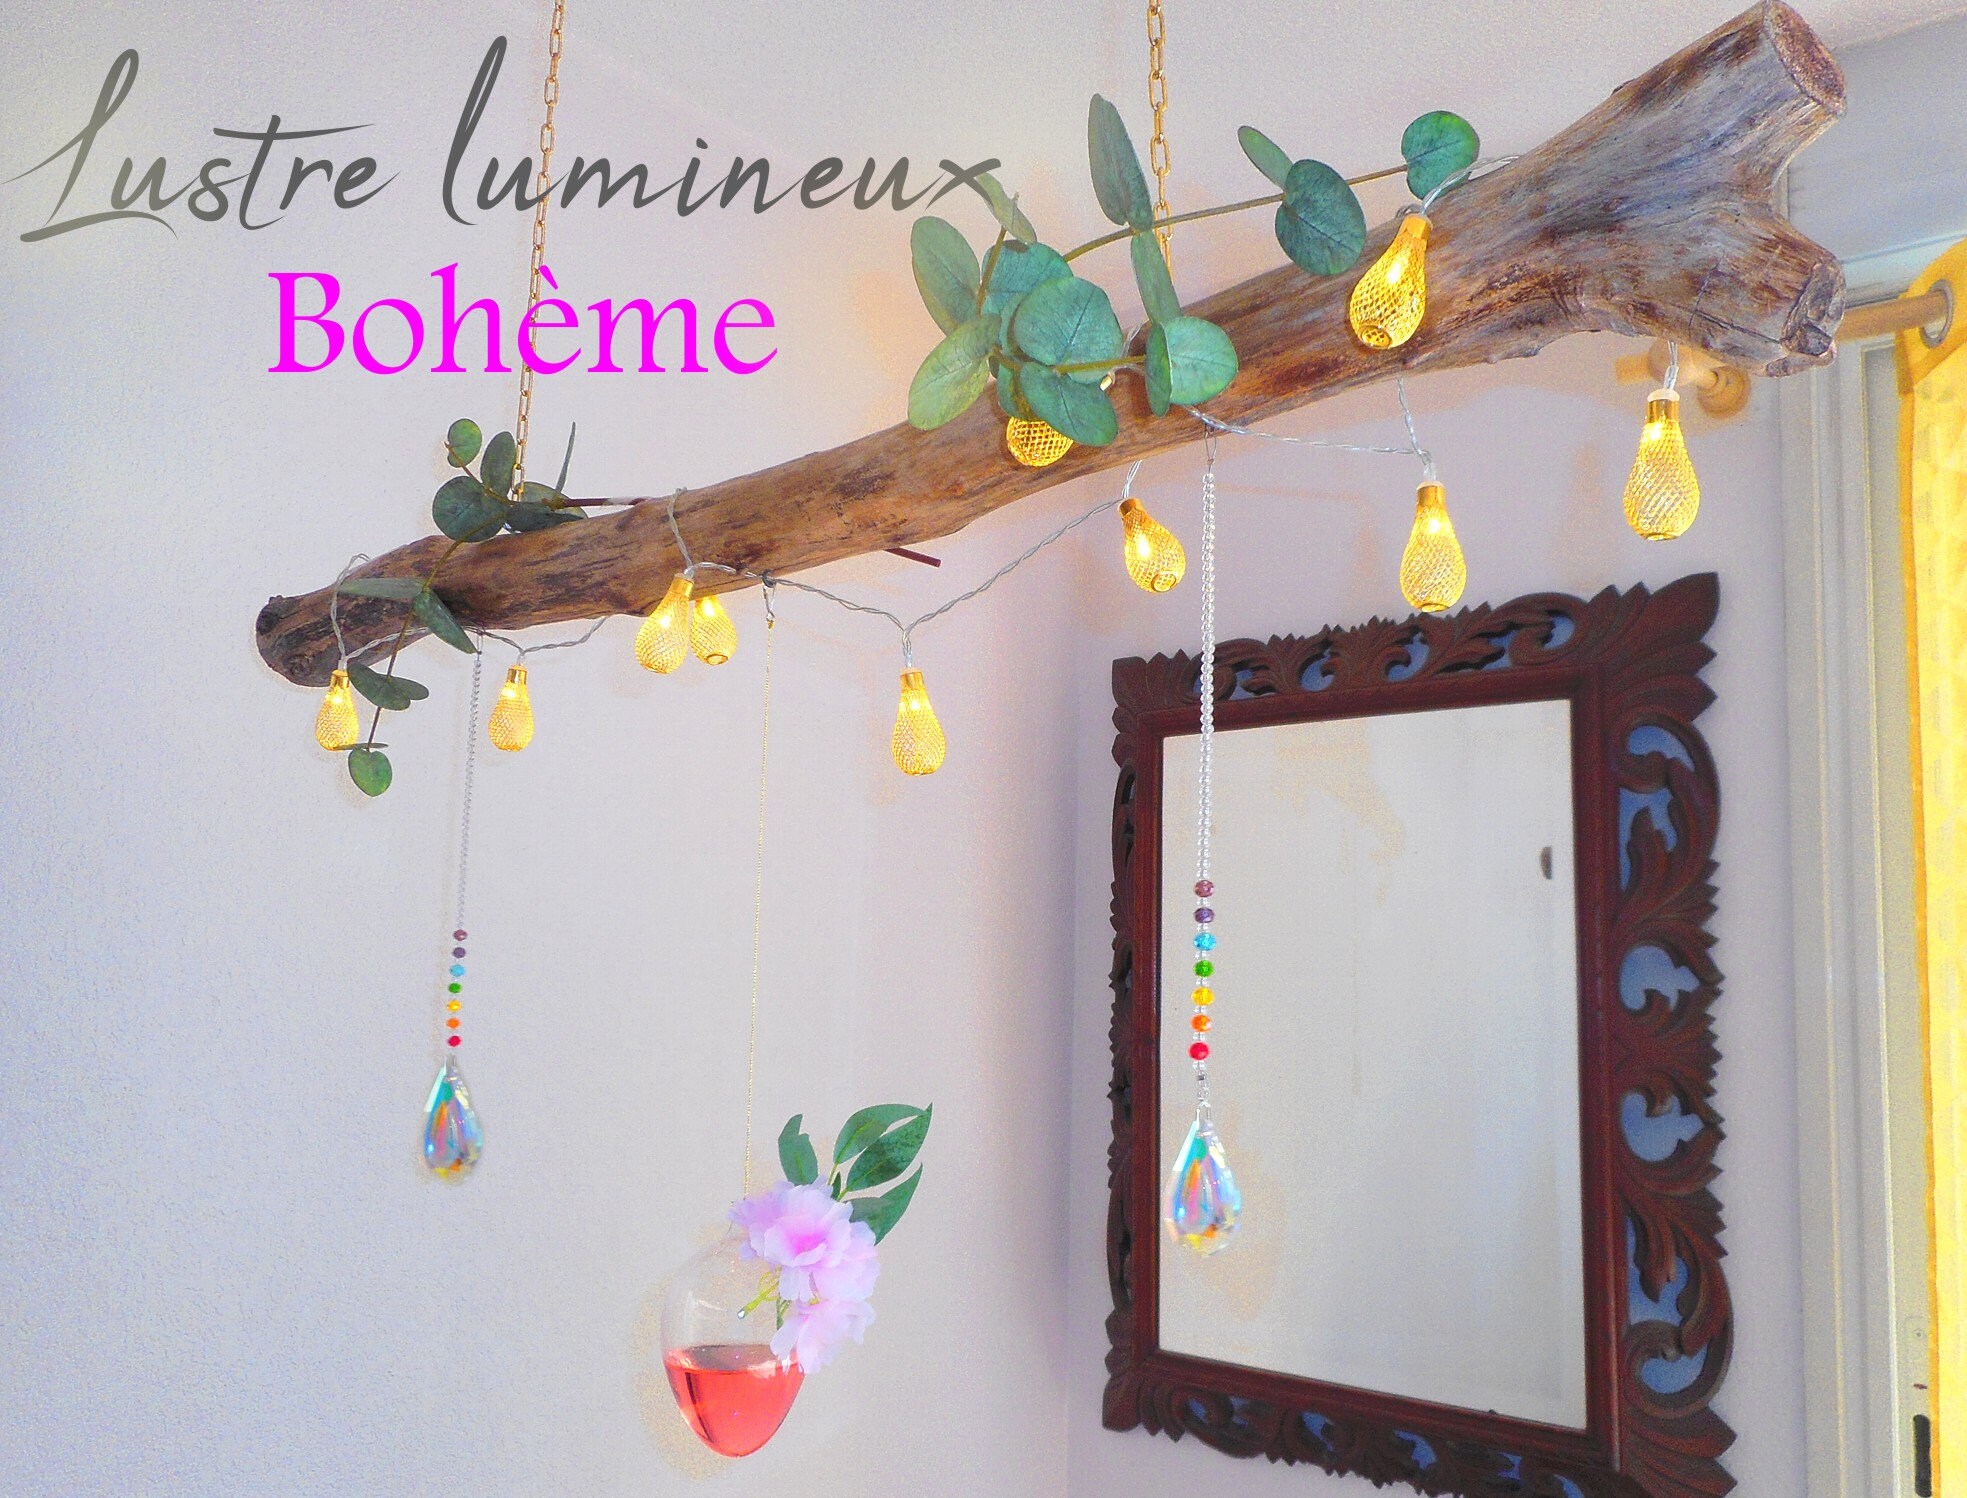 Création Lustre en Bois Flotté Original Lumineux, Bohème Chic Végétal et Photophore Pour Ambiance Sa